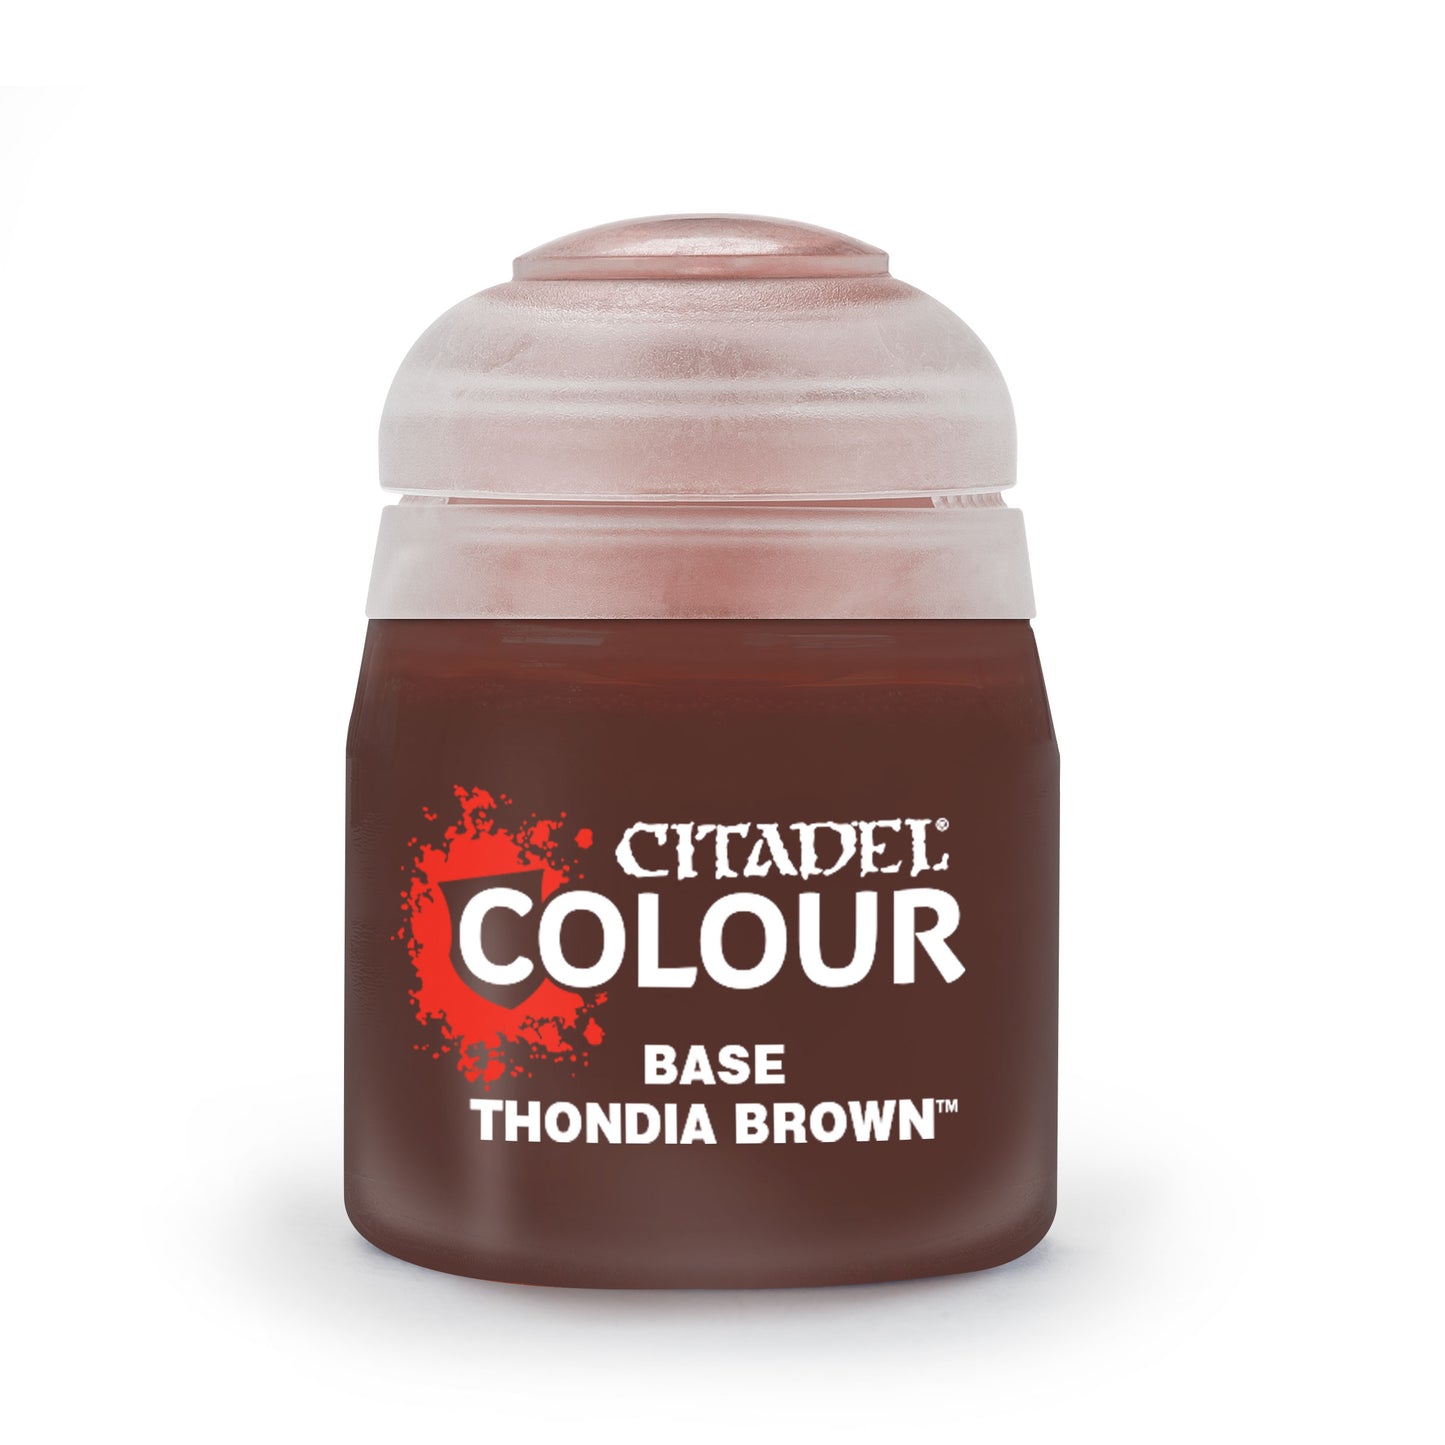 Citadel Colour - Thondia Brown Base Paint